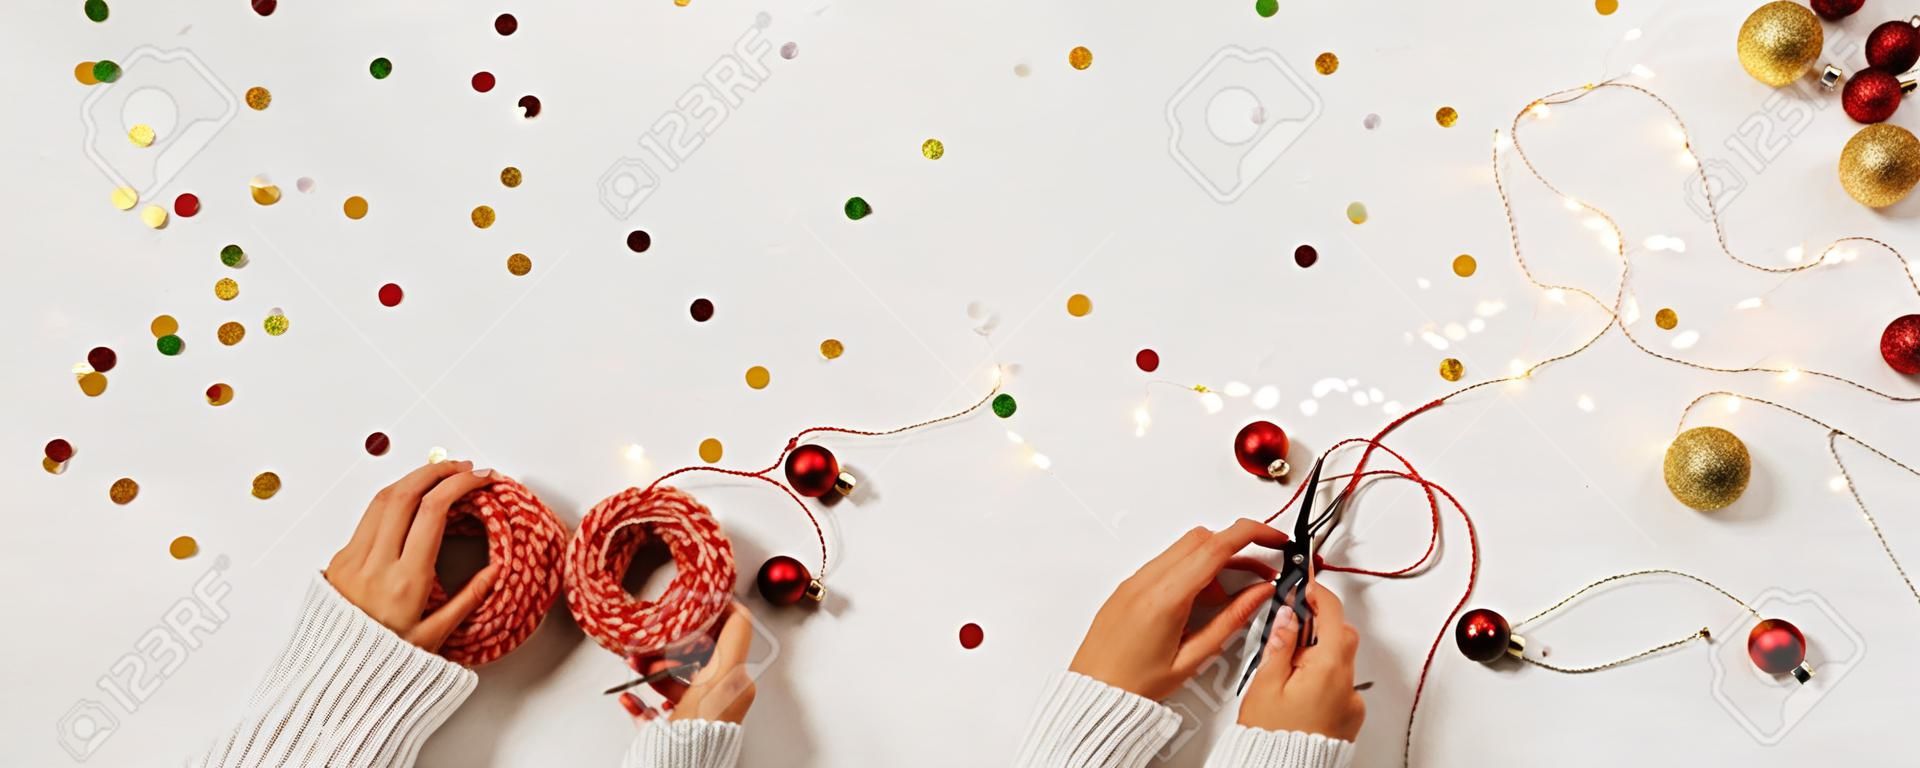 새해를 위한 선물 상자 스웨터 팩에 있는 여성의 손. 흰색 배경에 색종이 조각과 텍스트를 위한 공간이 있는 창의적인 크리스마스 레이아웃입니다.